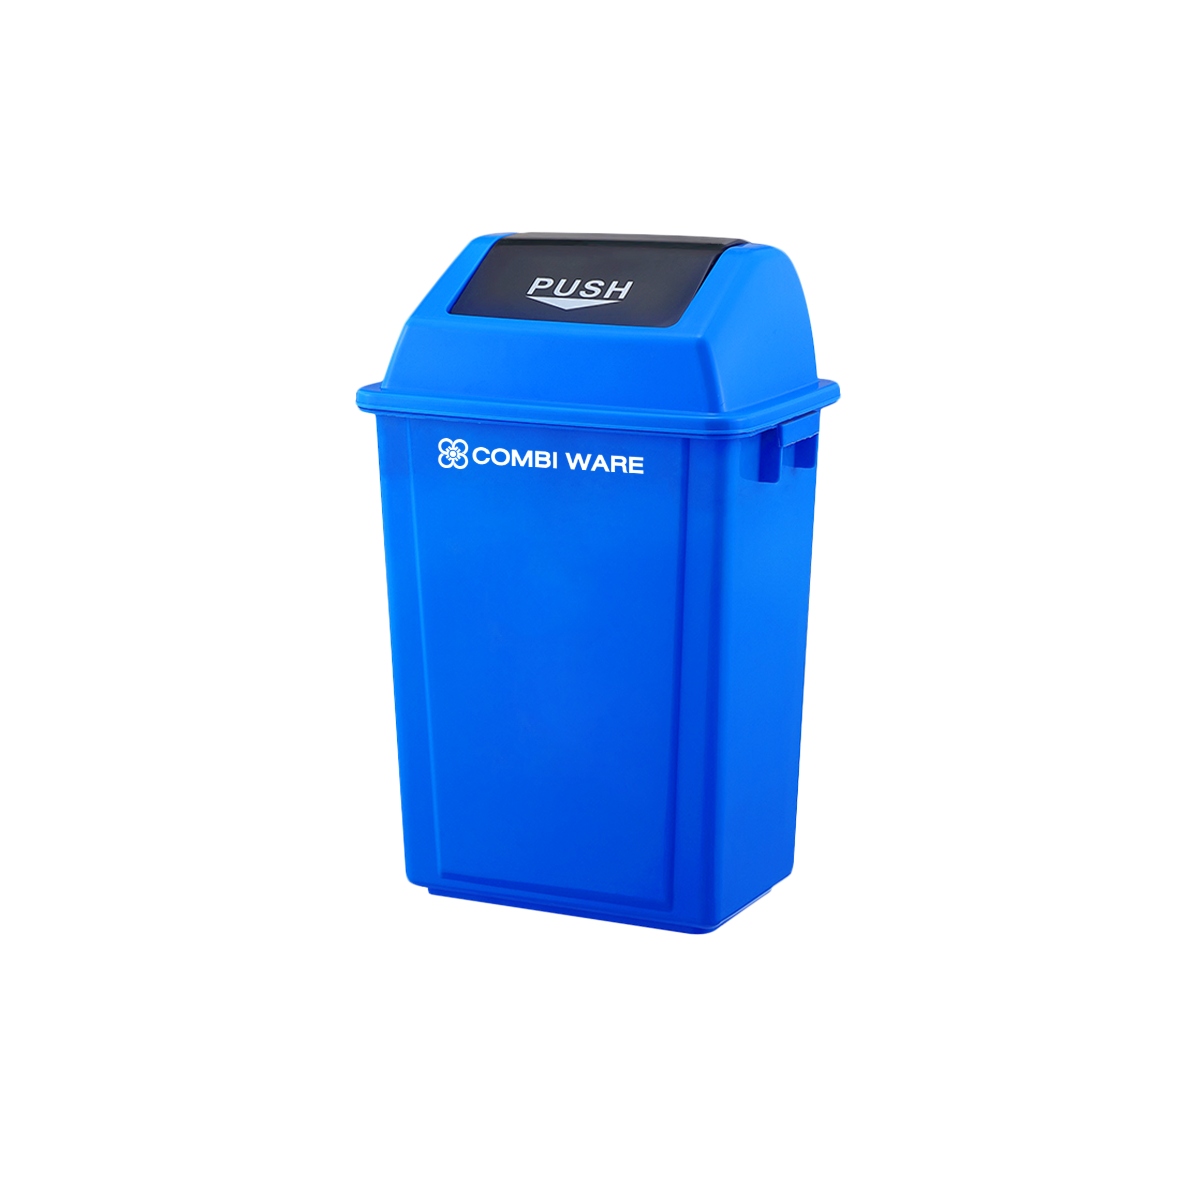 ถังขยะพลาสติก ขนาด 40 ลิตร แบบฝาบานสวิง สีน้ำเงิน